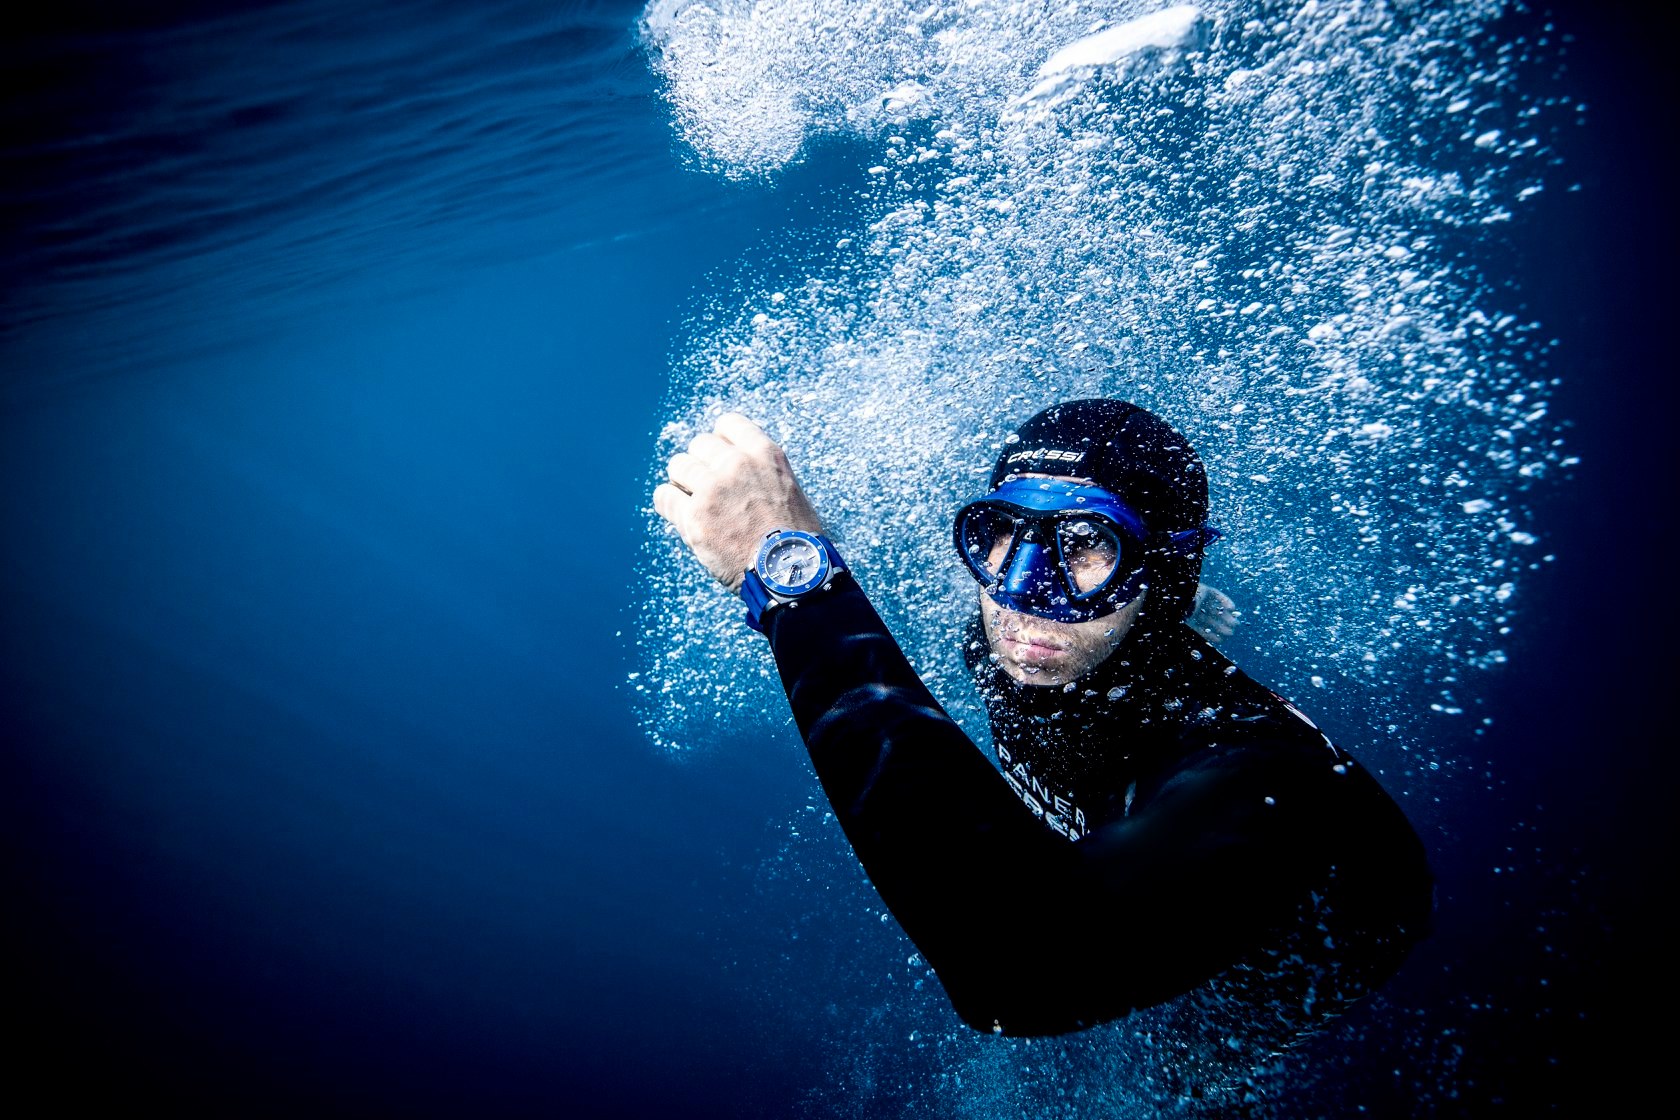 Panerai沛納海隆重推出全新專業潛水腕錶，堪稱驍勇強悍、堅毅不屈的化身。嶄新SUBMERSIBLE計時腕錶靈感源自GUILLAUME NÉRY，這位法國自由潛水冠軍，因創下世界紀錄和拍攝驚艷的水底照片而蜚聲國際。沛納海Submersible專業潛水計時腕錶 ── Guillaume Néry版是專業潛水腕錶的典範，防水深度約300米 (30巴)，配備單向旋轉錶圈， 準確顯示下潛時間。夜光白色時標與別具質感的鯊灰色錶盤形成強烈對比， 使錶盤不論在光線充足或漆黑的環境也能清晰可讀。錶底蓋鐫刻自由潛水王者本人的簽名，以及他創下的驚人紀錄 ── 一口氣下潛126米。 如欲了解更多，請密切留意高時錶行Facebook 專頁或親臨以下高時錶行分店：　